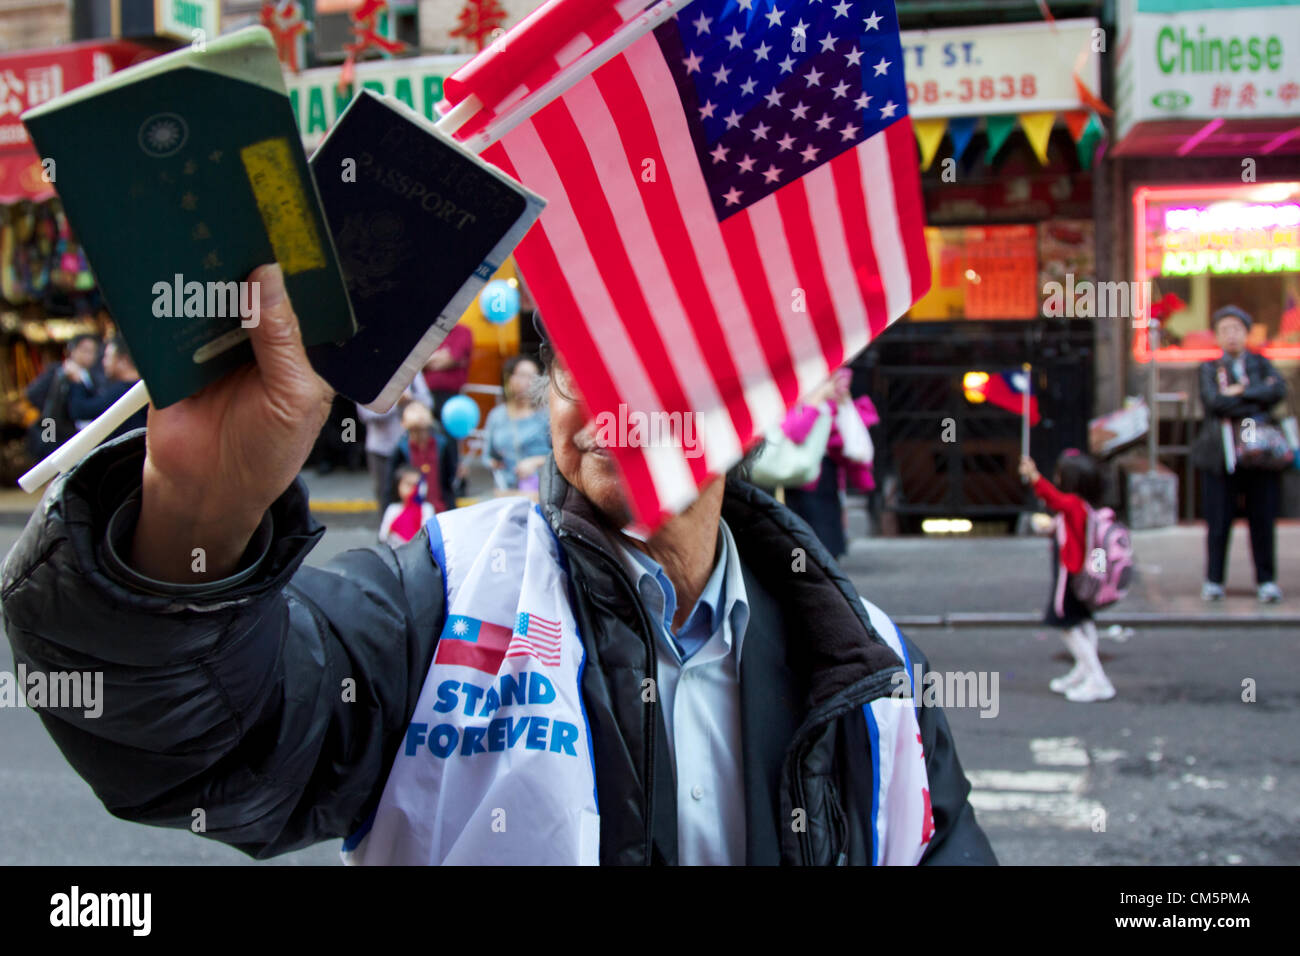 New York, NY, USA - 10 octobre 2012 : l'Homme montrant montrant symboliquement son taiwanais et américains des passeports à la parade de la fête nationale de Taiwan dans les rues de Chinatown à Manhattan, New York, NY, USA le 10 octobre 2012. Banque D'Images